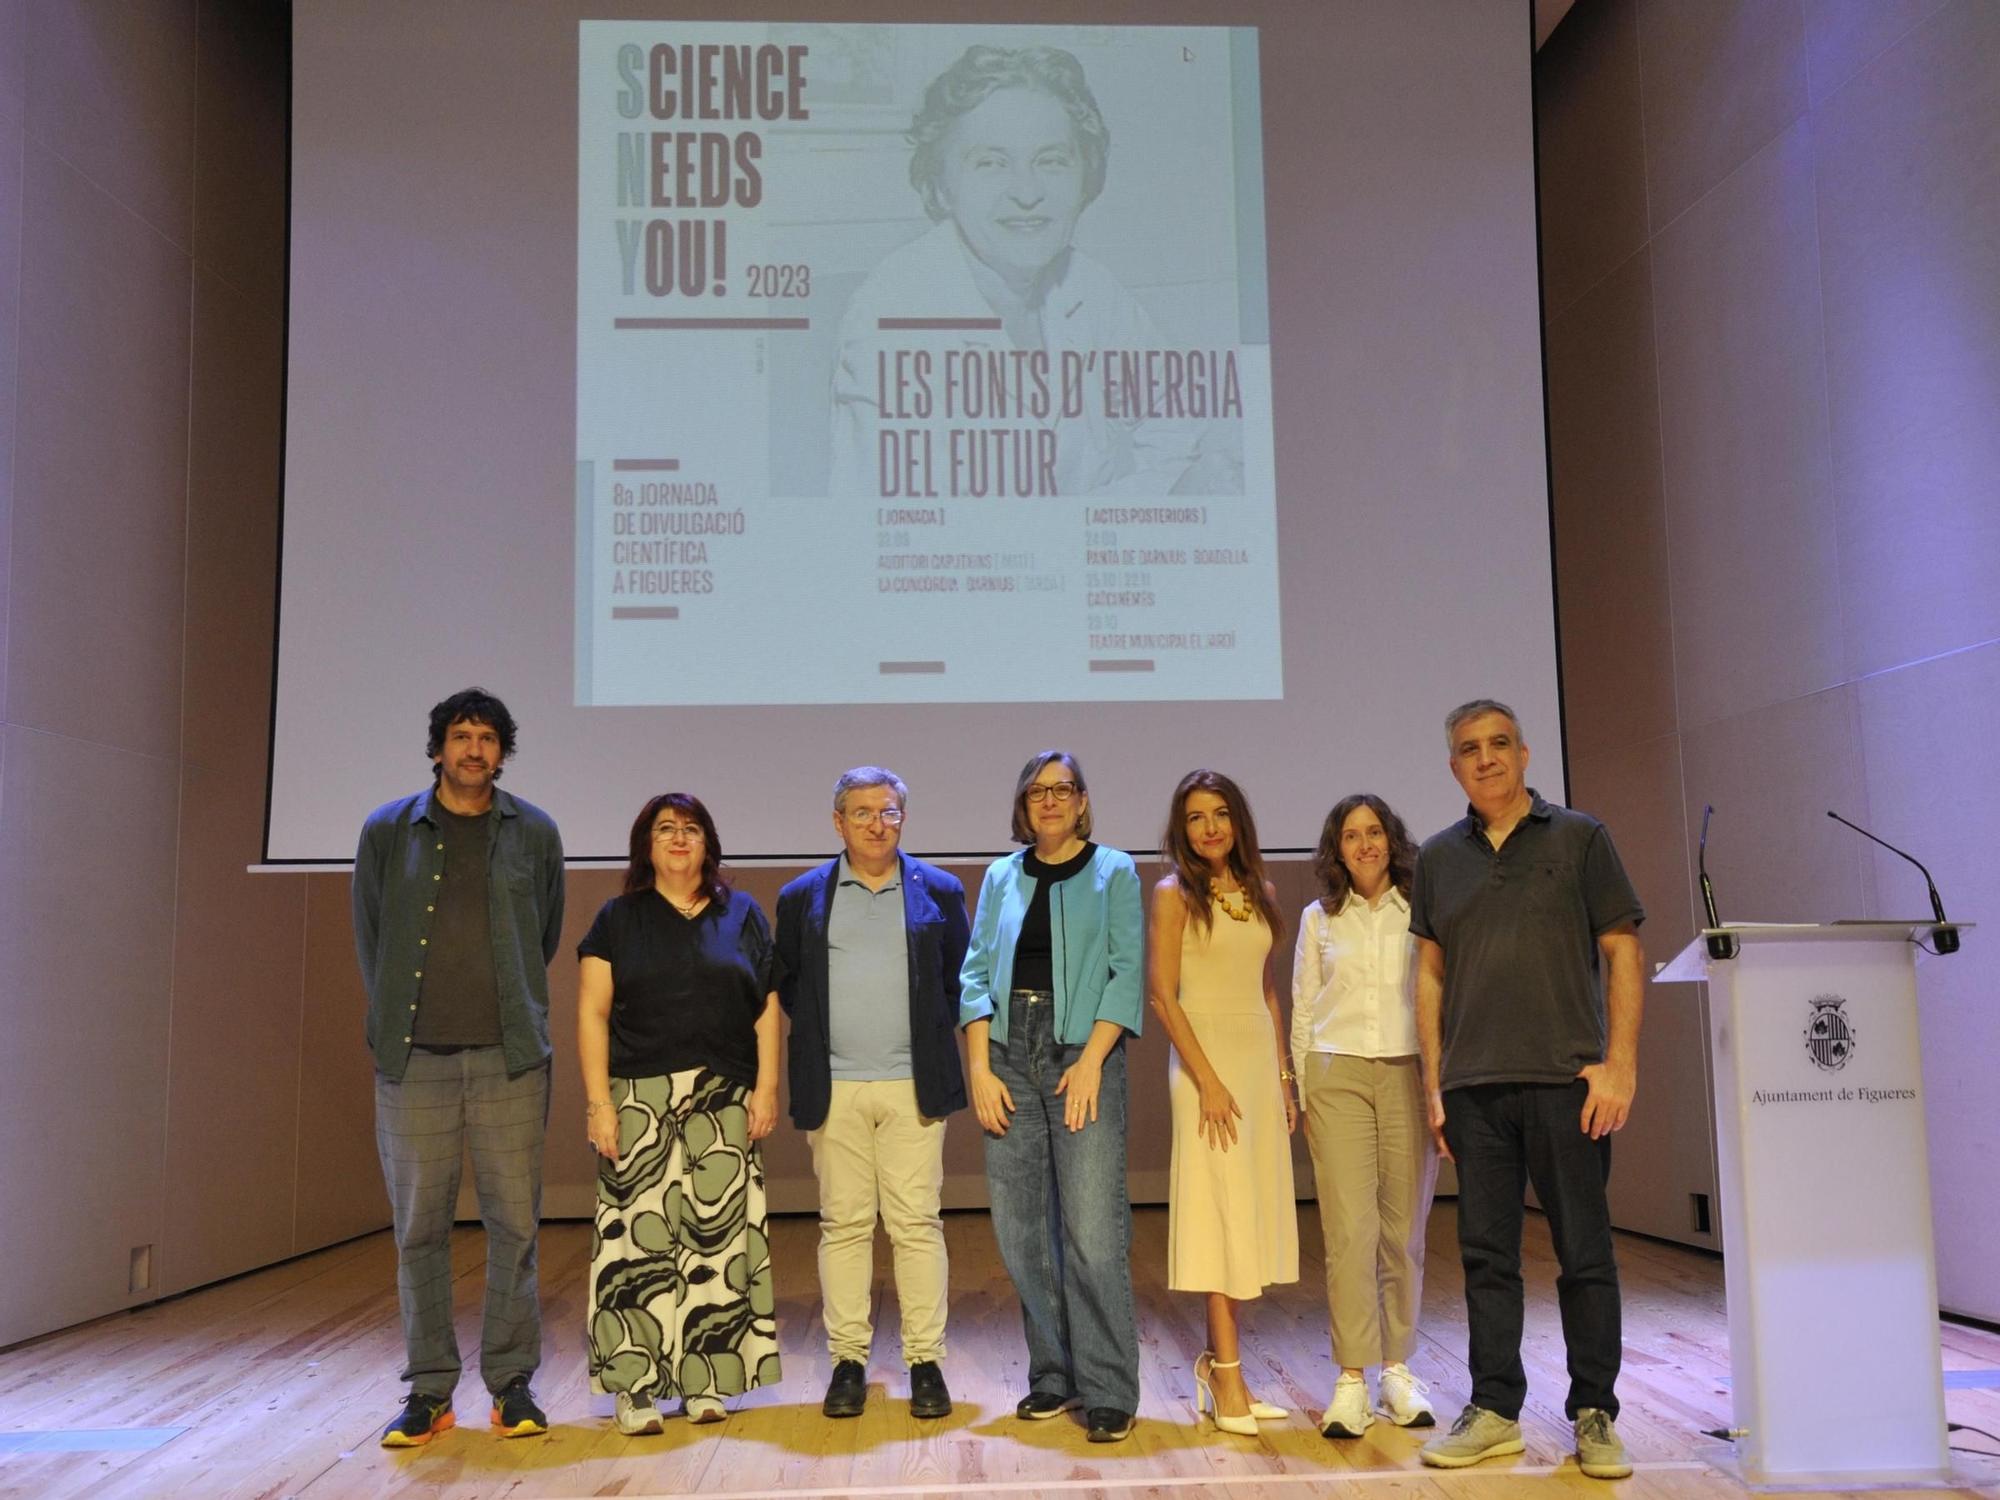 FOTOS: Science Needs You! aplega 300 persones en xerrades i visites guiades a Figueres i Darnius